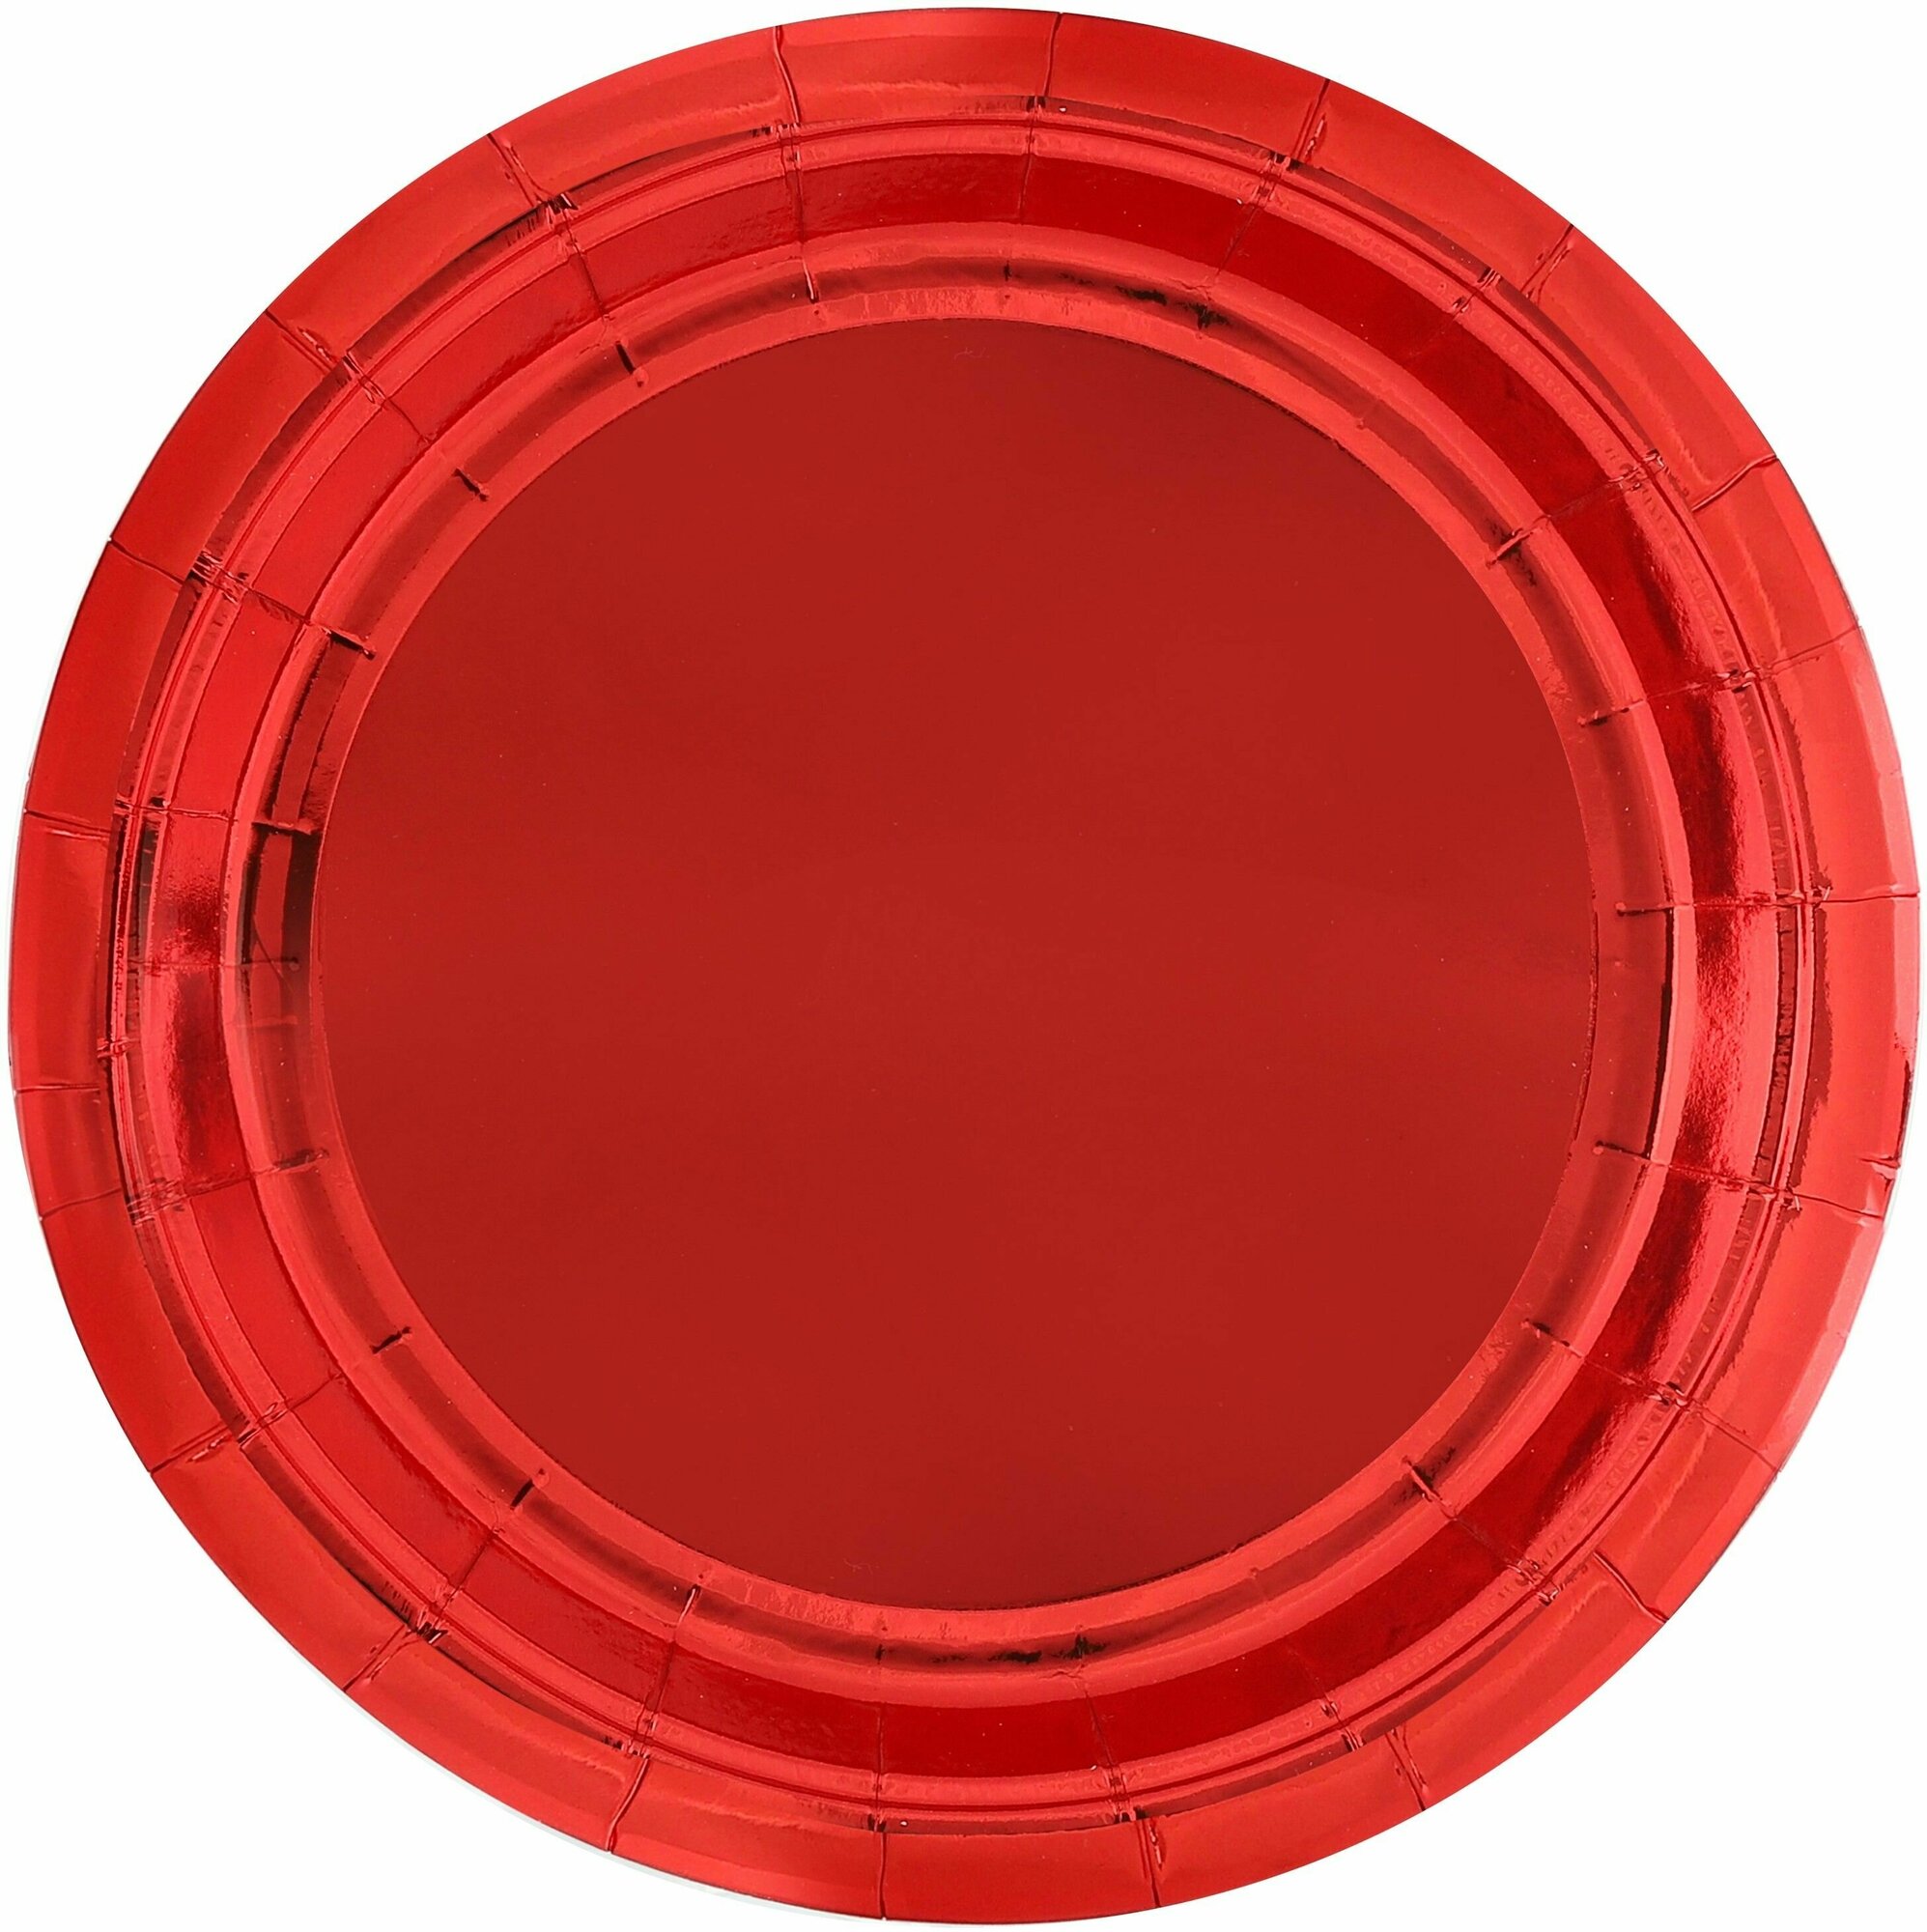 Тарелки одноразовые бумажные/Набор одноразовых бумажных тарелок для праздника (9'/23 см) Красный, Металлик, 6 шт.